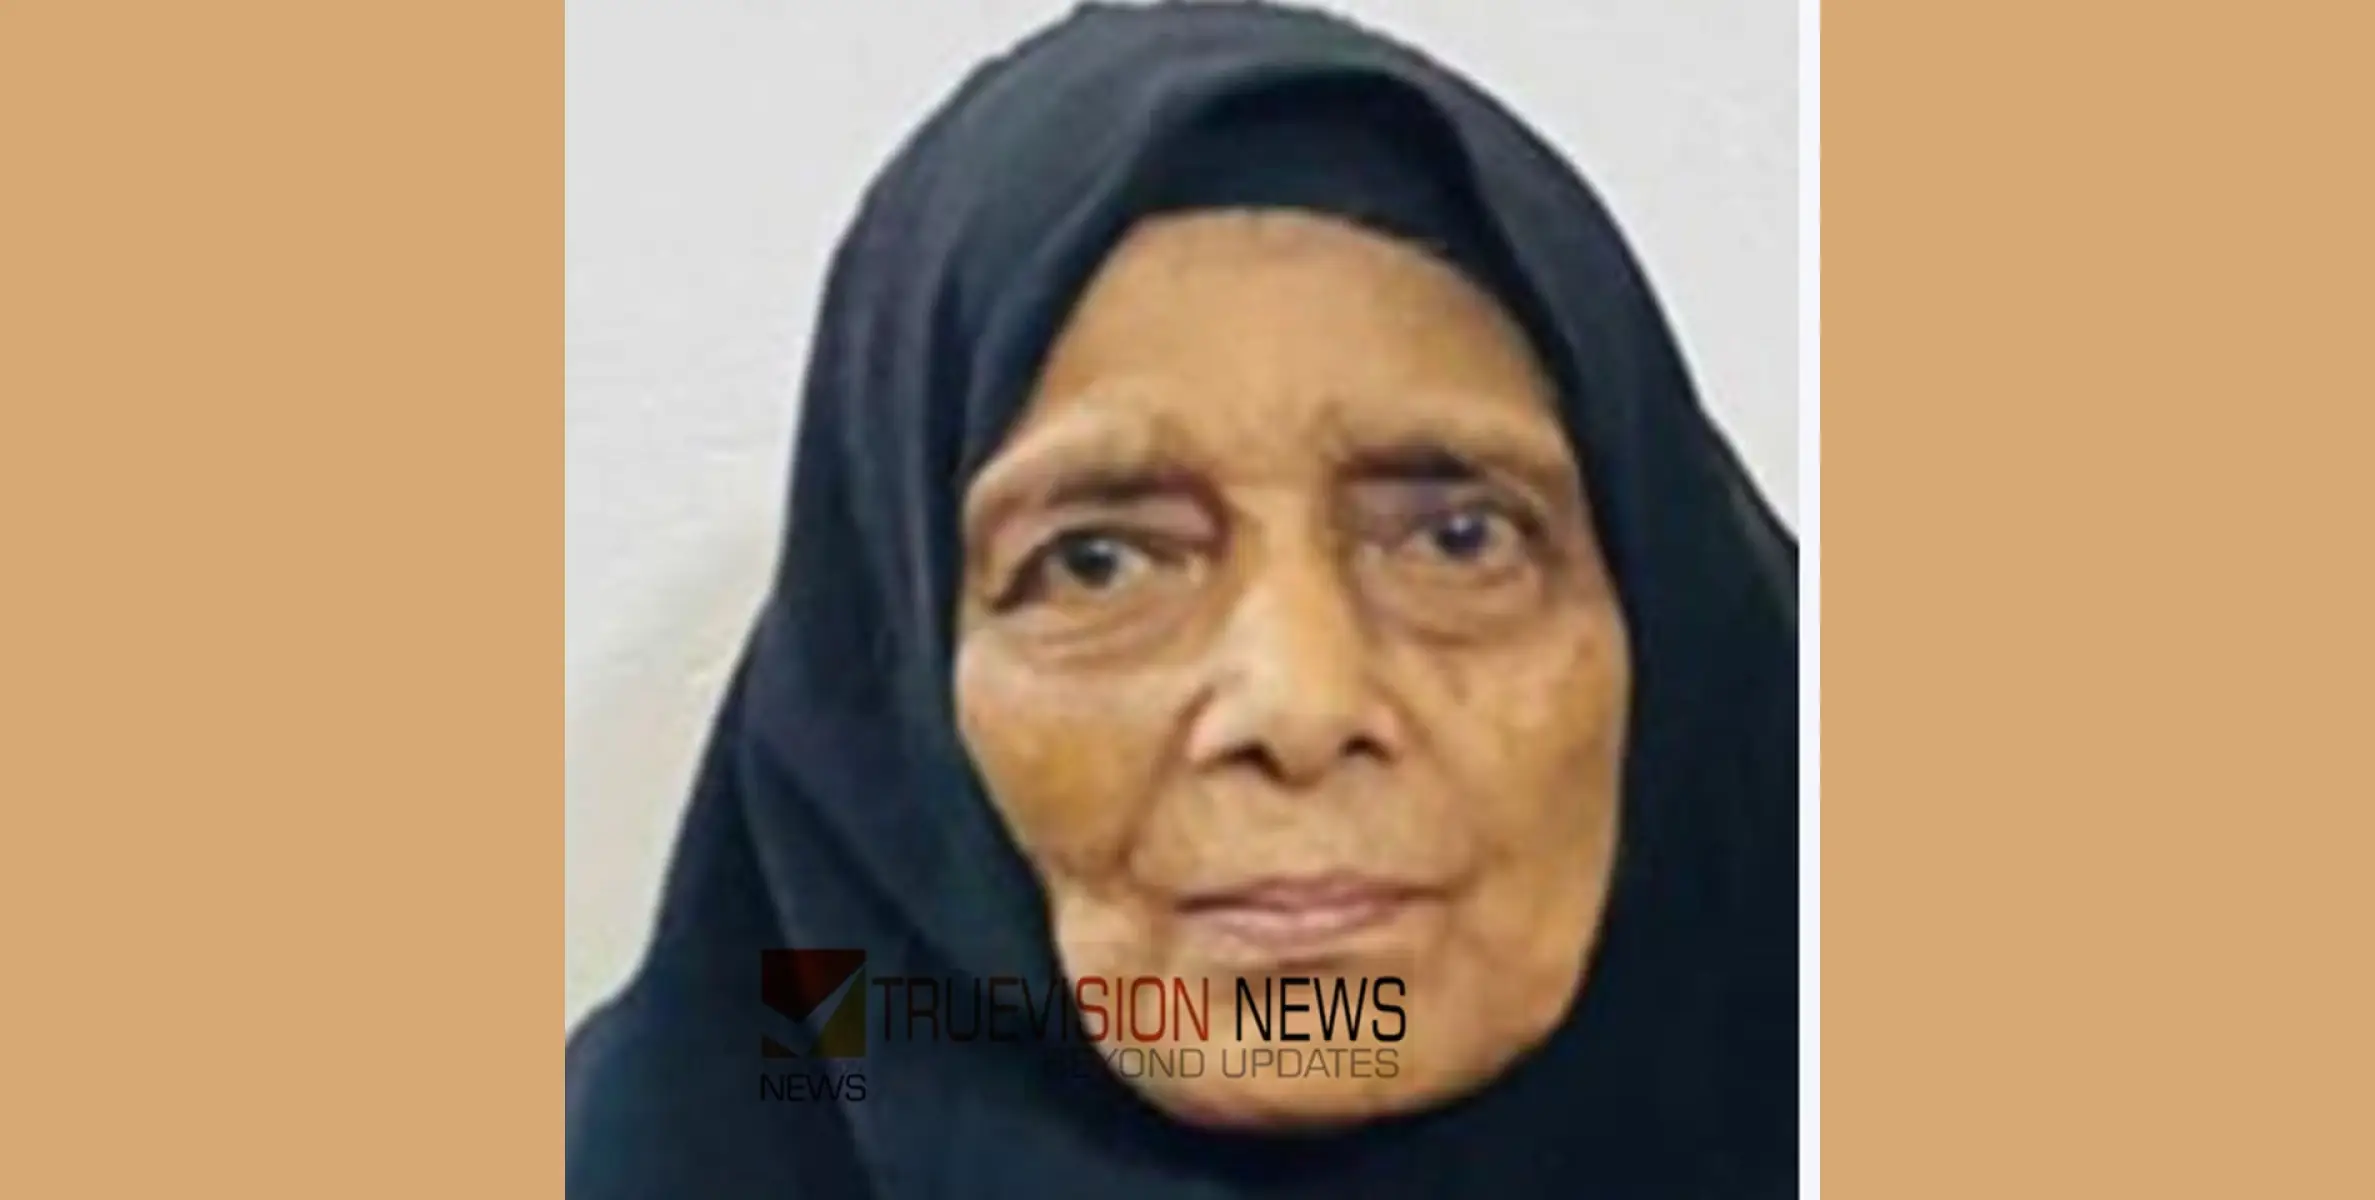 #obituary|കക്കട്ടിൽ കുളങ്ങരത്തെ കോറോത്ത് ബിയ്യാത്തു അന്തരിച്ചു